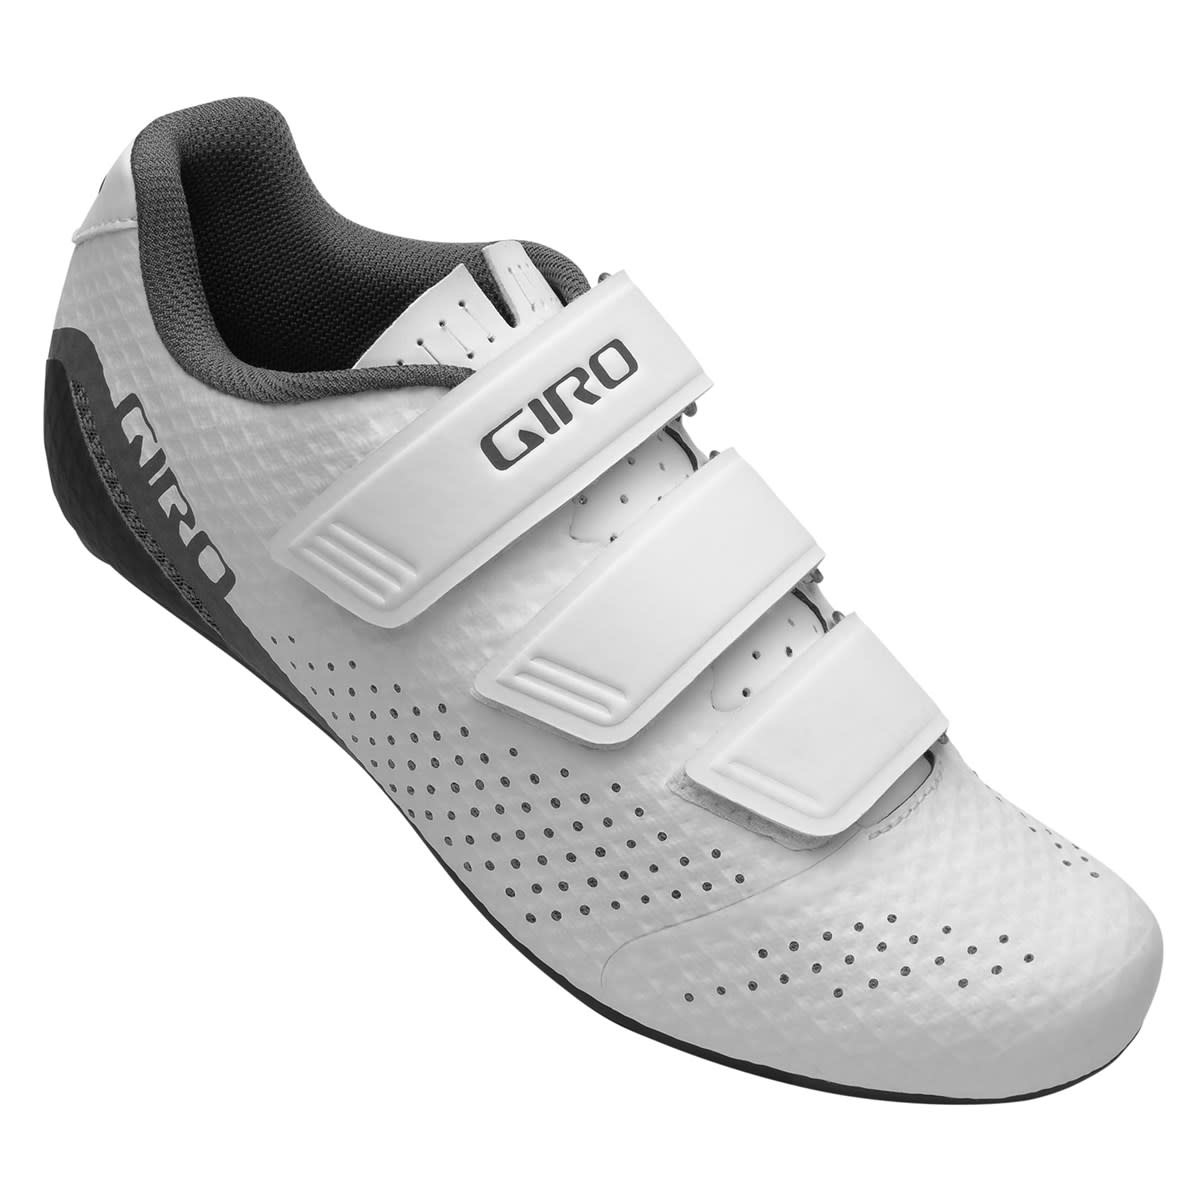 You added <b><u>Giro Stylus Road Womens Cycling Shoes 2021</u></b> to your cart.